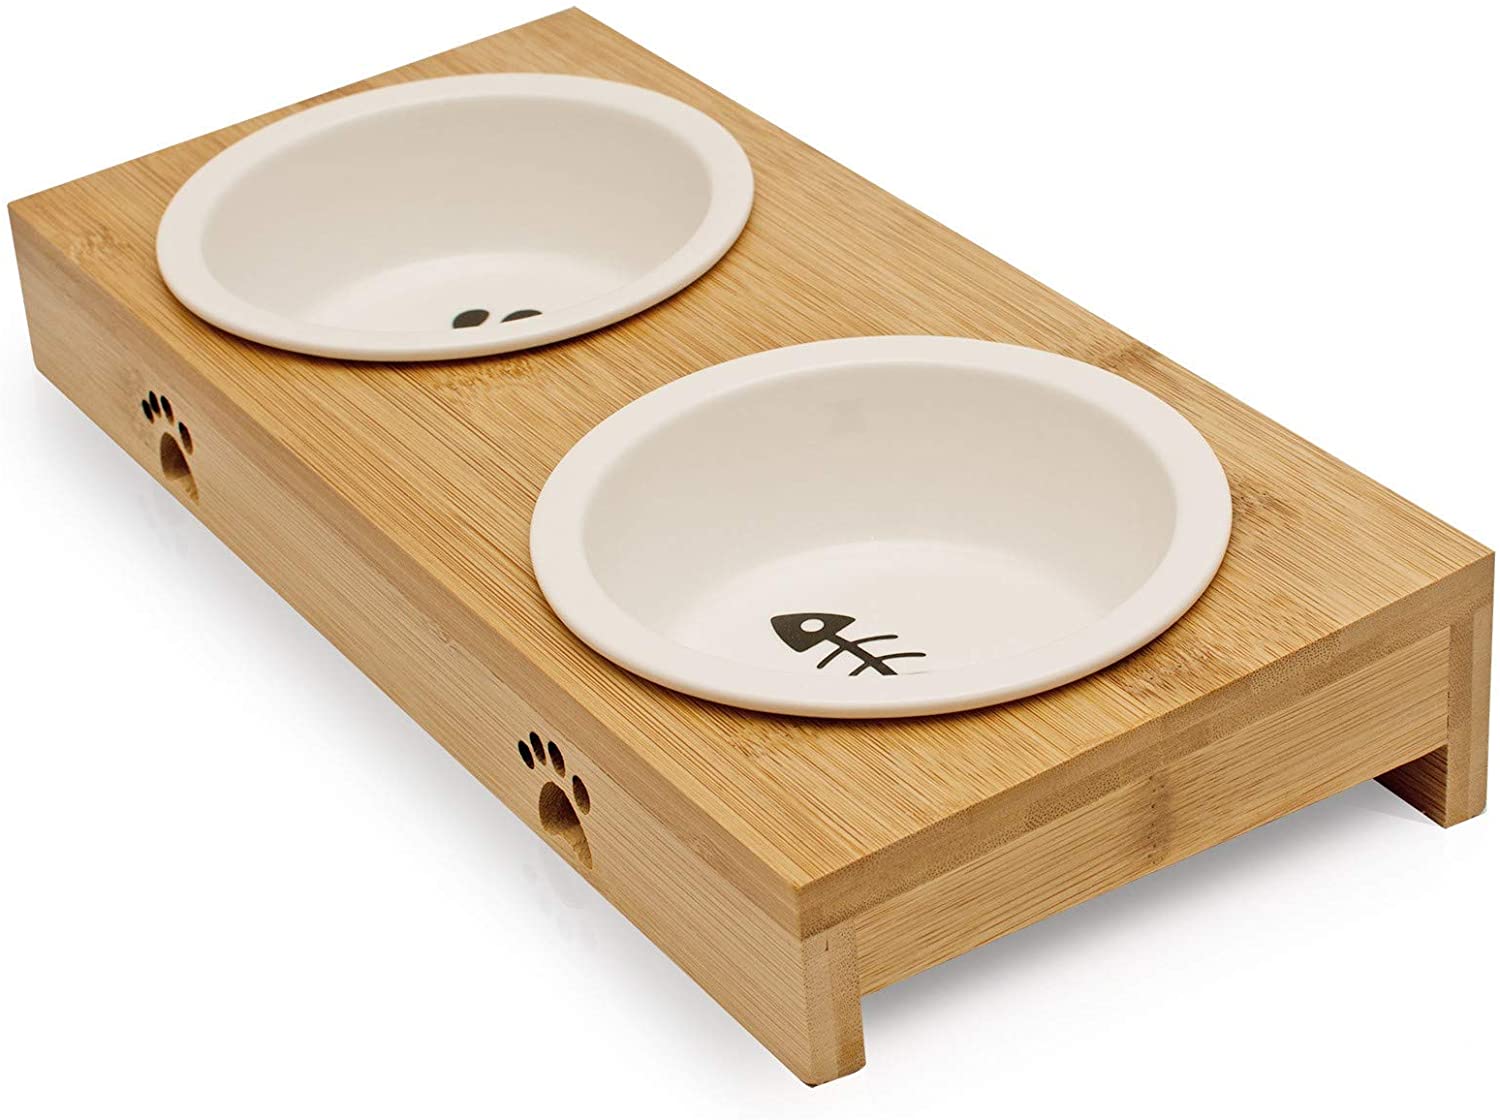  Pfotenolymp® Comedero para gatos hecho de Bambú / Madera - 2 Tazones para su gato - Juego de Tazones hechos de cerámica en blanco, grande para el agua y la comida - Plato de alimentación elevado 